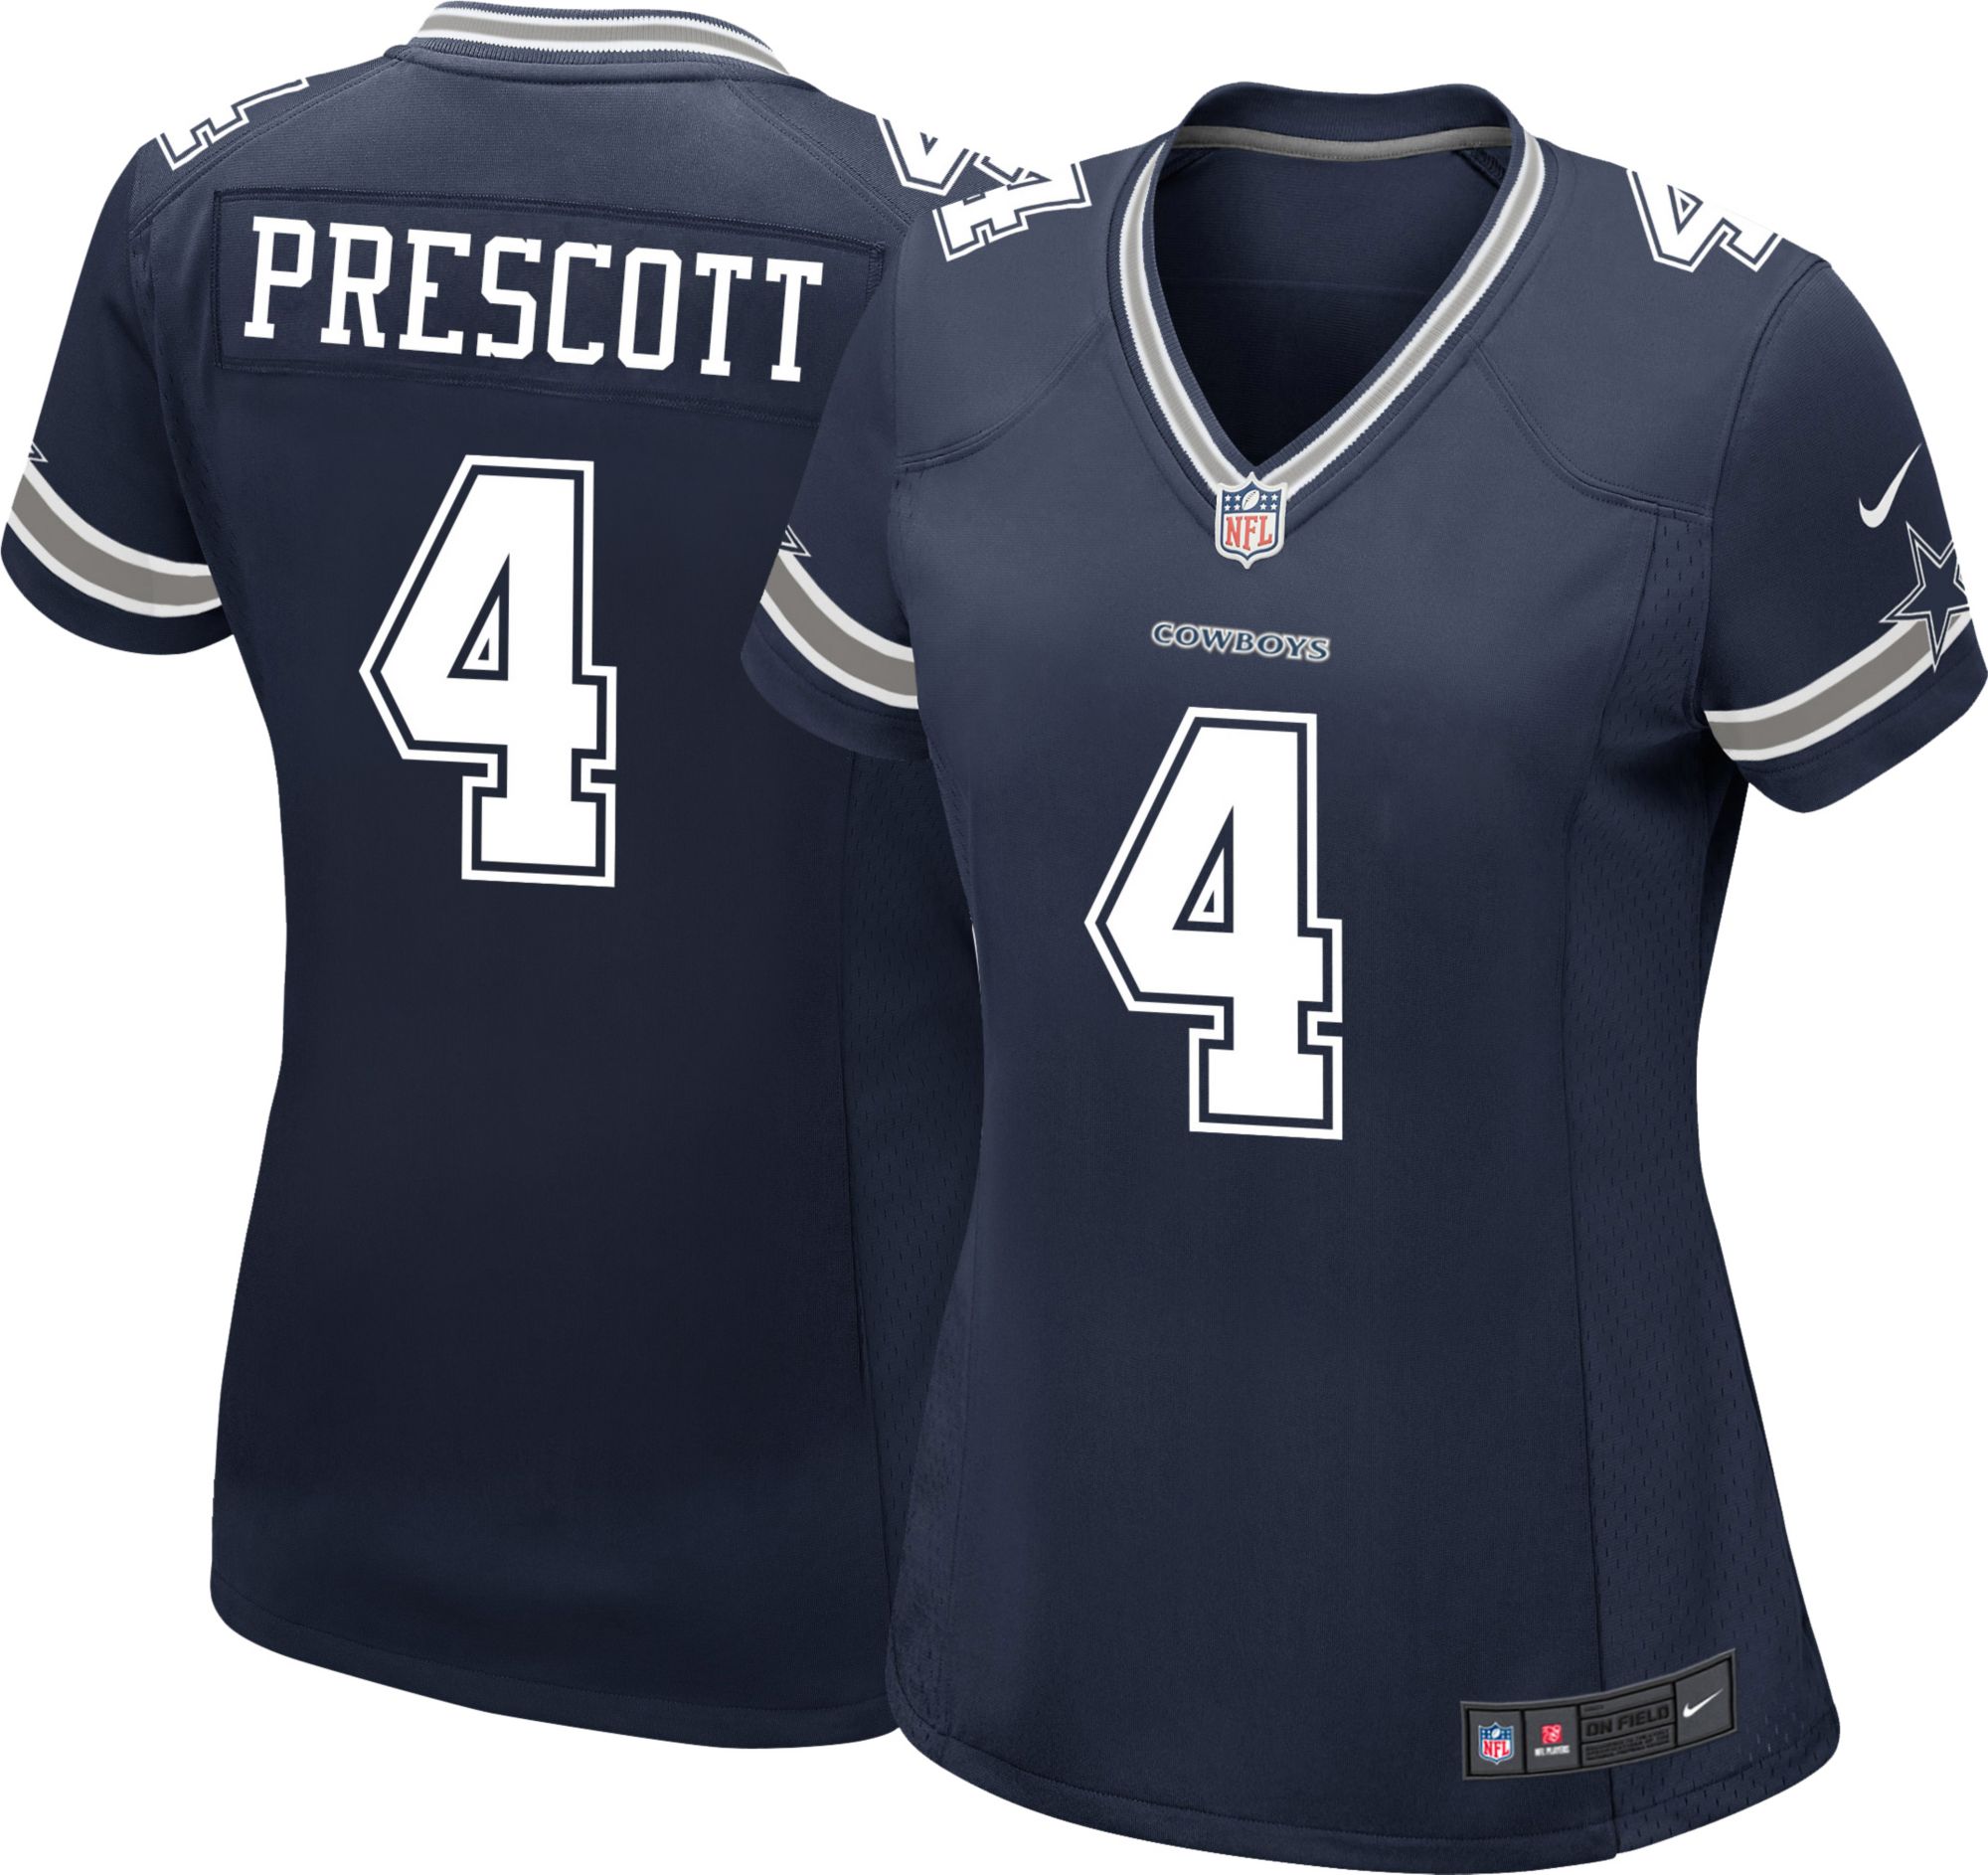 prescott jersey sales